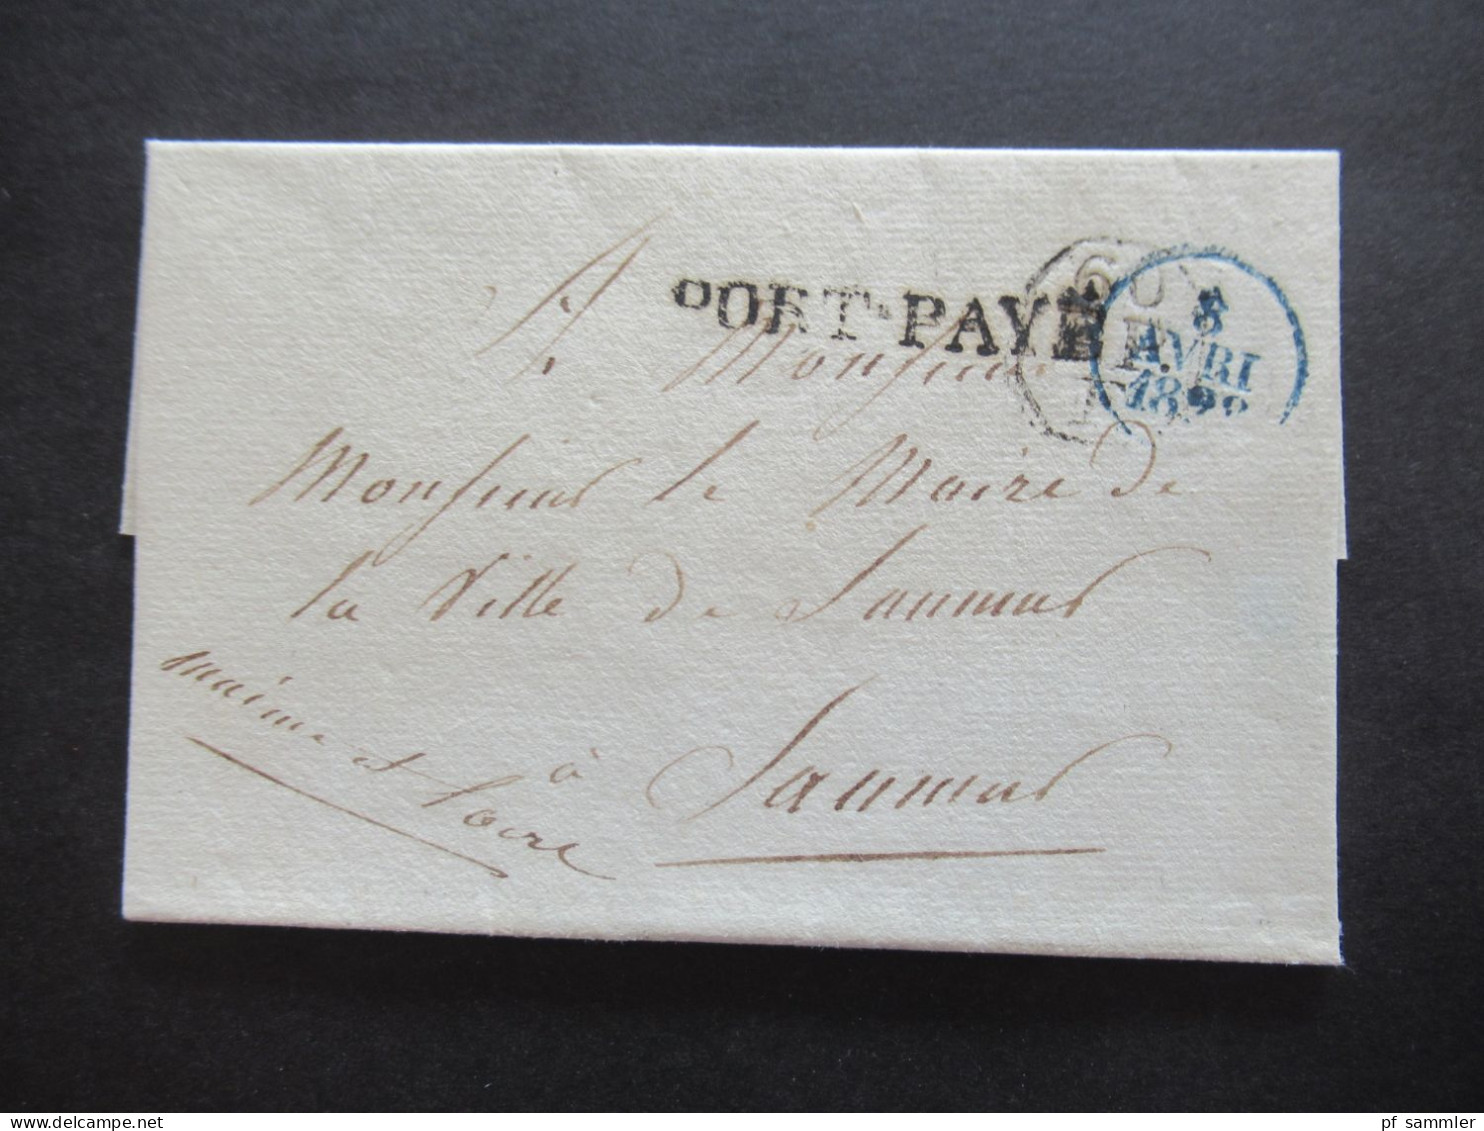 Frankreich Vorphila Paris 1820er Jahre PP / port paye Stempel / Faltbriefe viele mit Inhalt insgesamt 15 Stück!